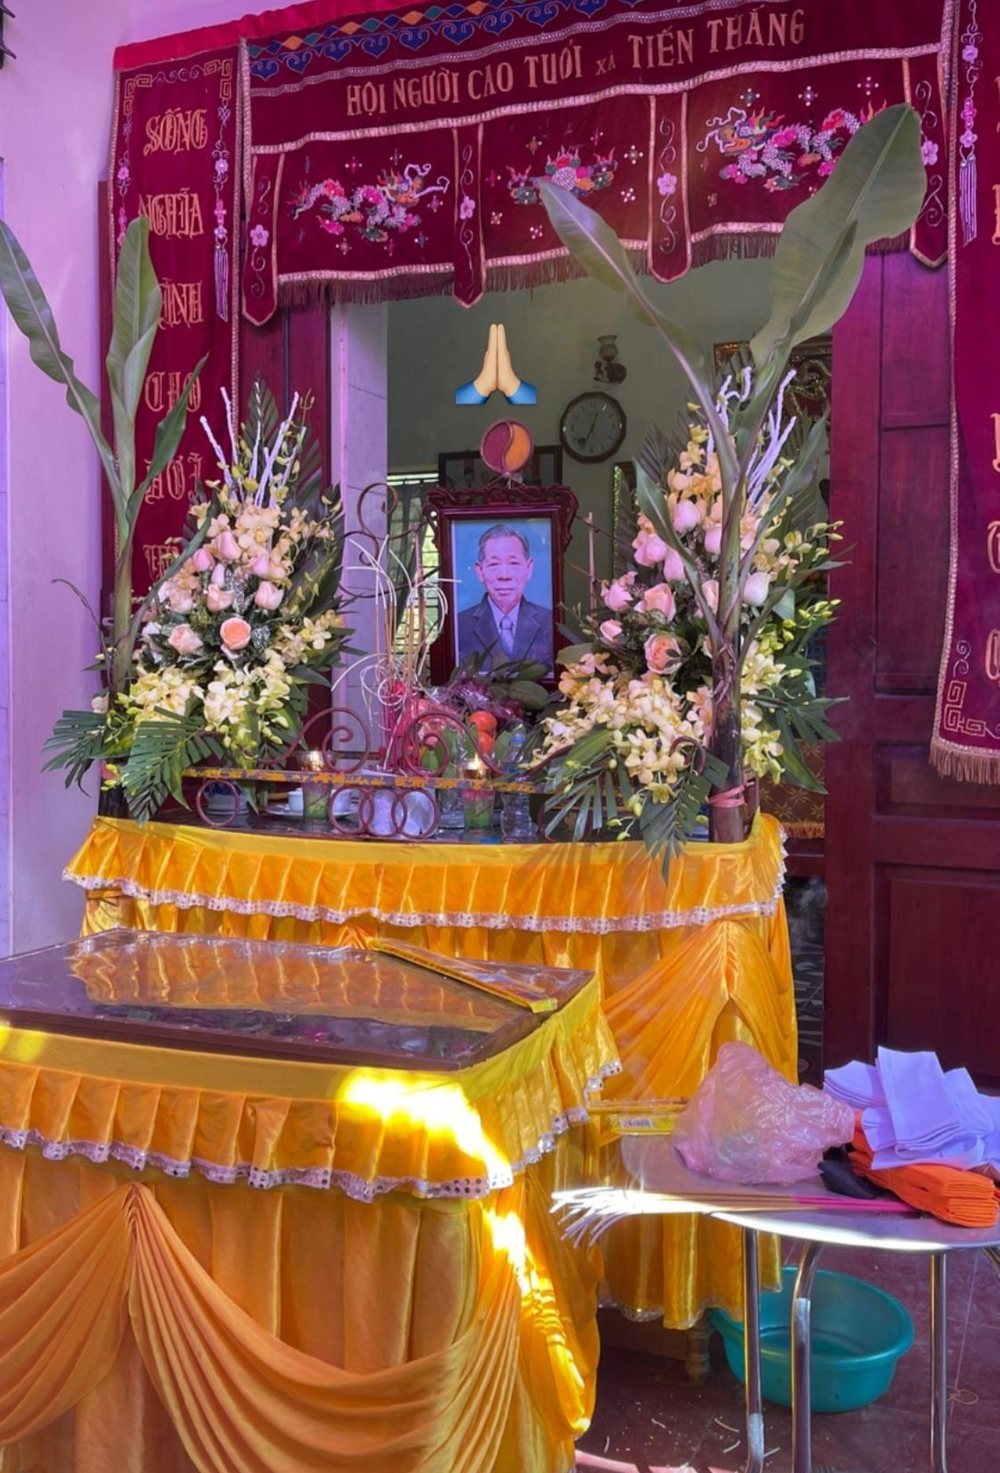  
Đám tang của ông nội Quốc Anh đã và đang được tổ chức tại Hà Nội